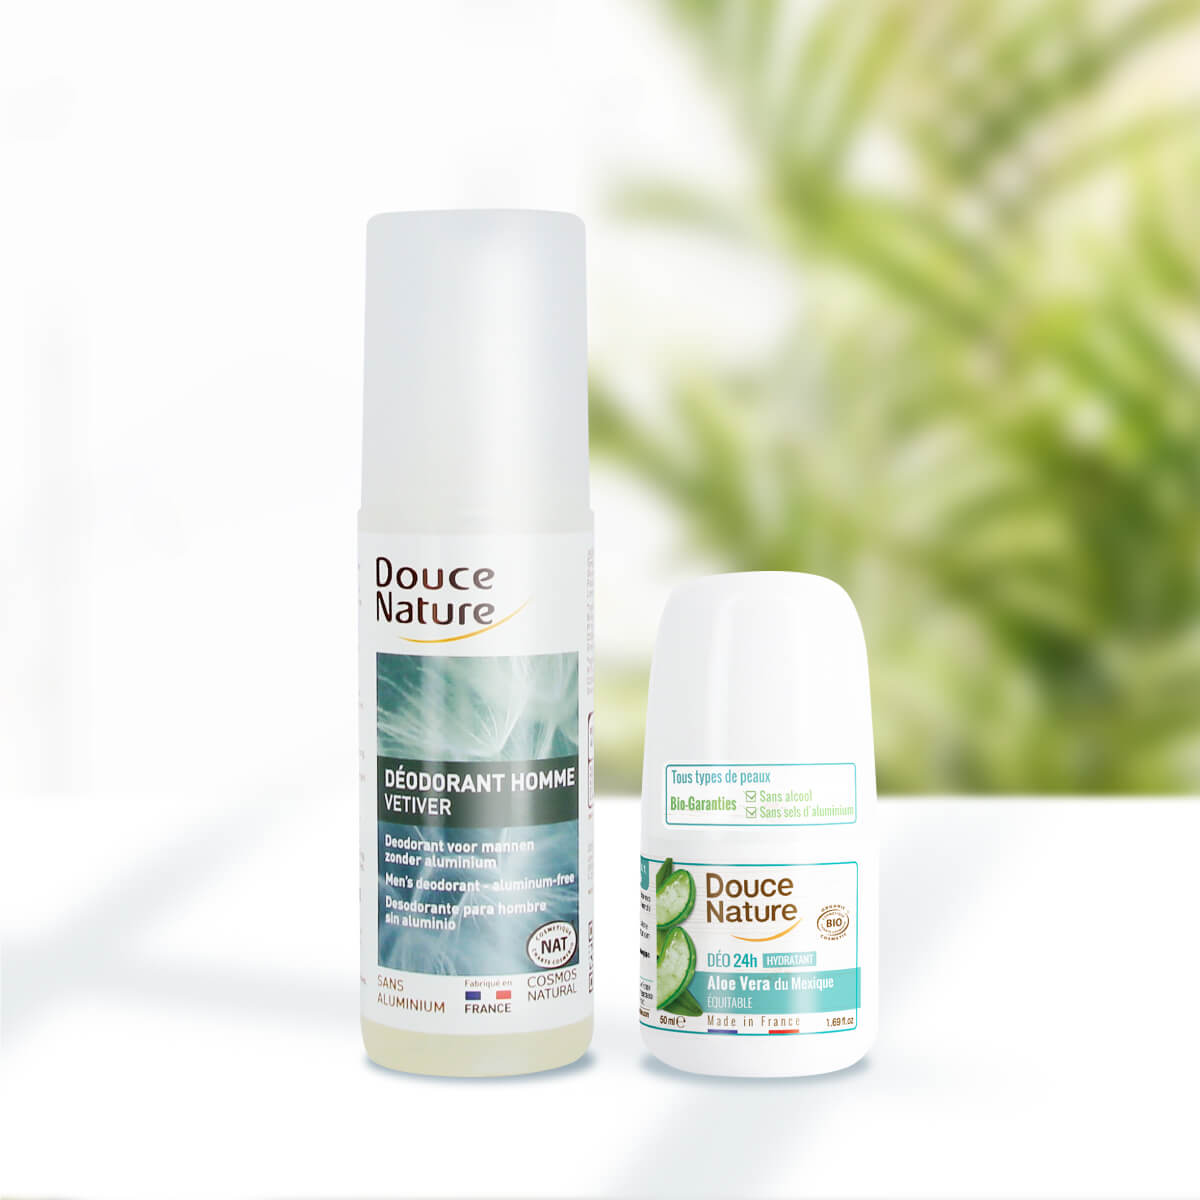 法國 Douce Nature 地恩全方位個人保養用品，採自有機公平貿易原料，針對不同的膚質及使用習慣，設計了護膚、護髮、體香劑等保養用品。